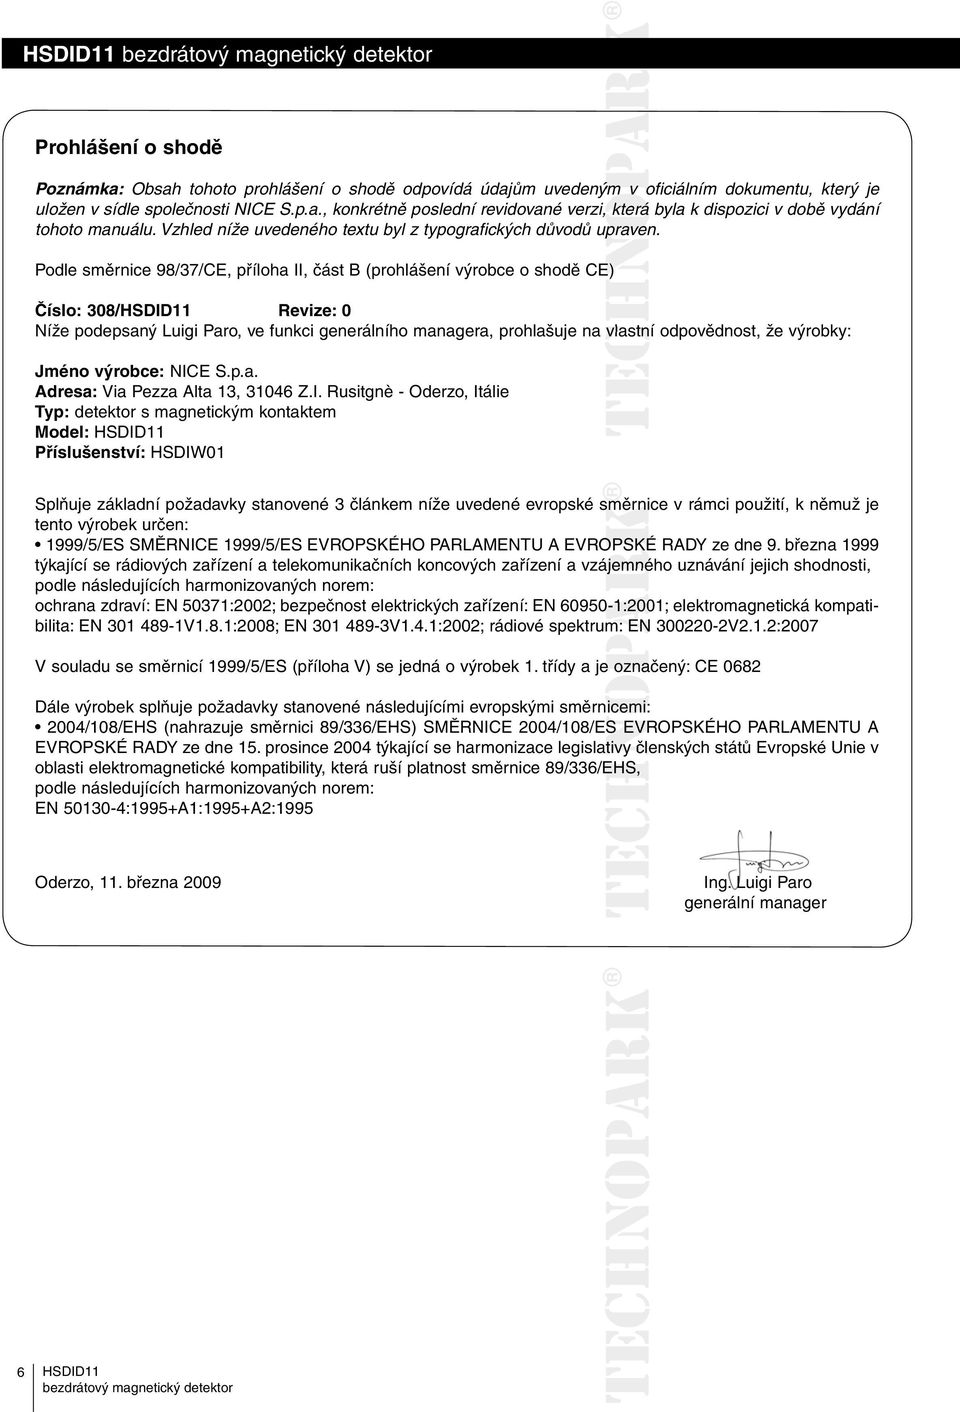 Podle směrnice 98/37/CE, příloha II, část B (prohlášení výrobce o shodě CE) Číslo: 308/ Revize: 0 Níže podepsaný Luigi Paro, ve funkci generálního managera, prohlašuje na vlastní odpovědnost, že